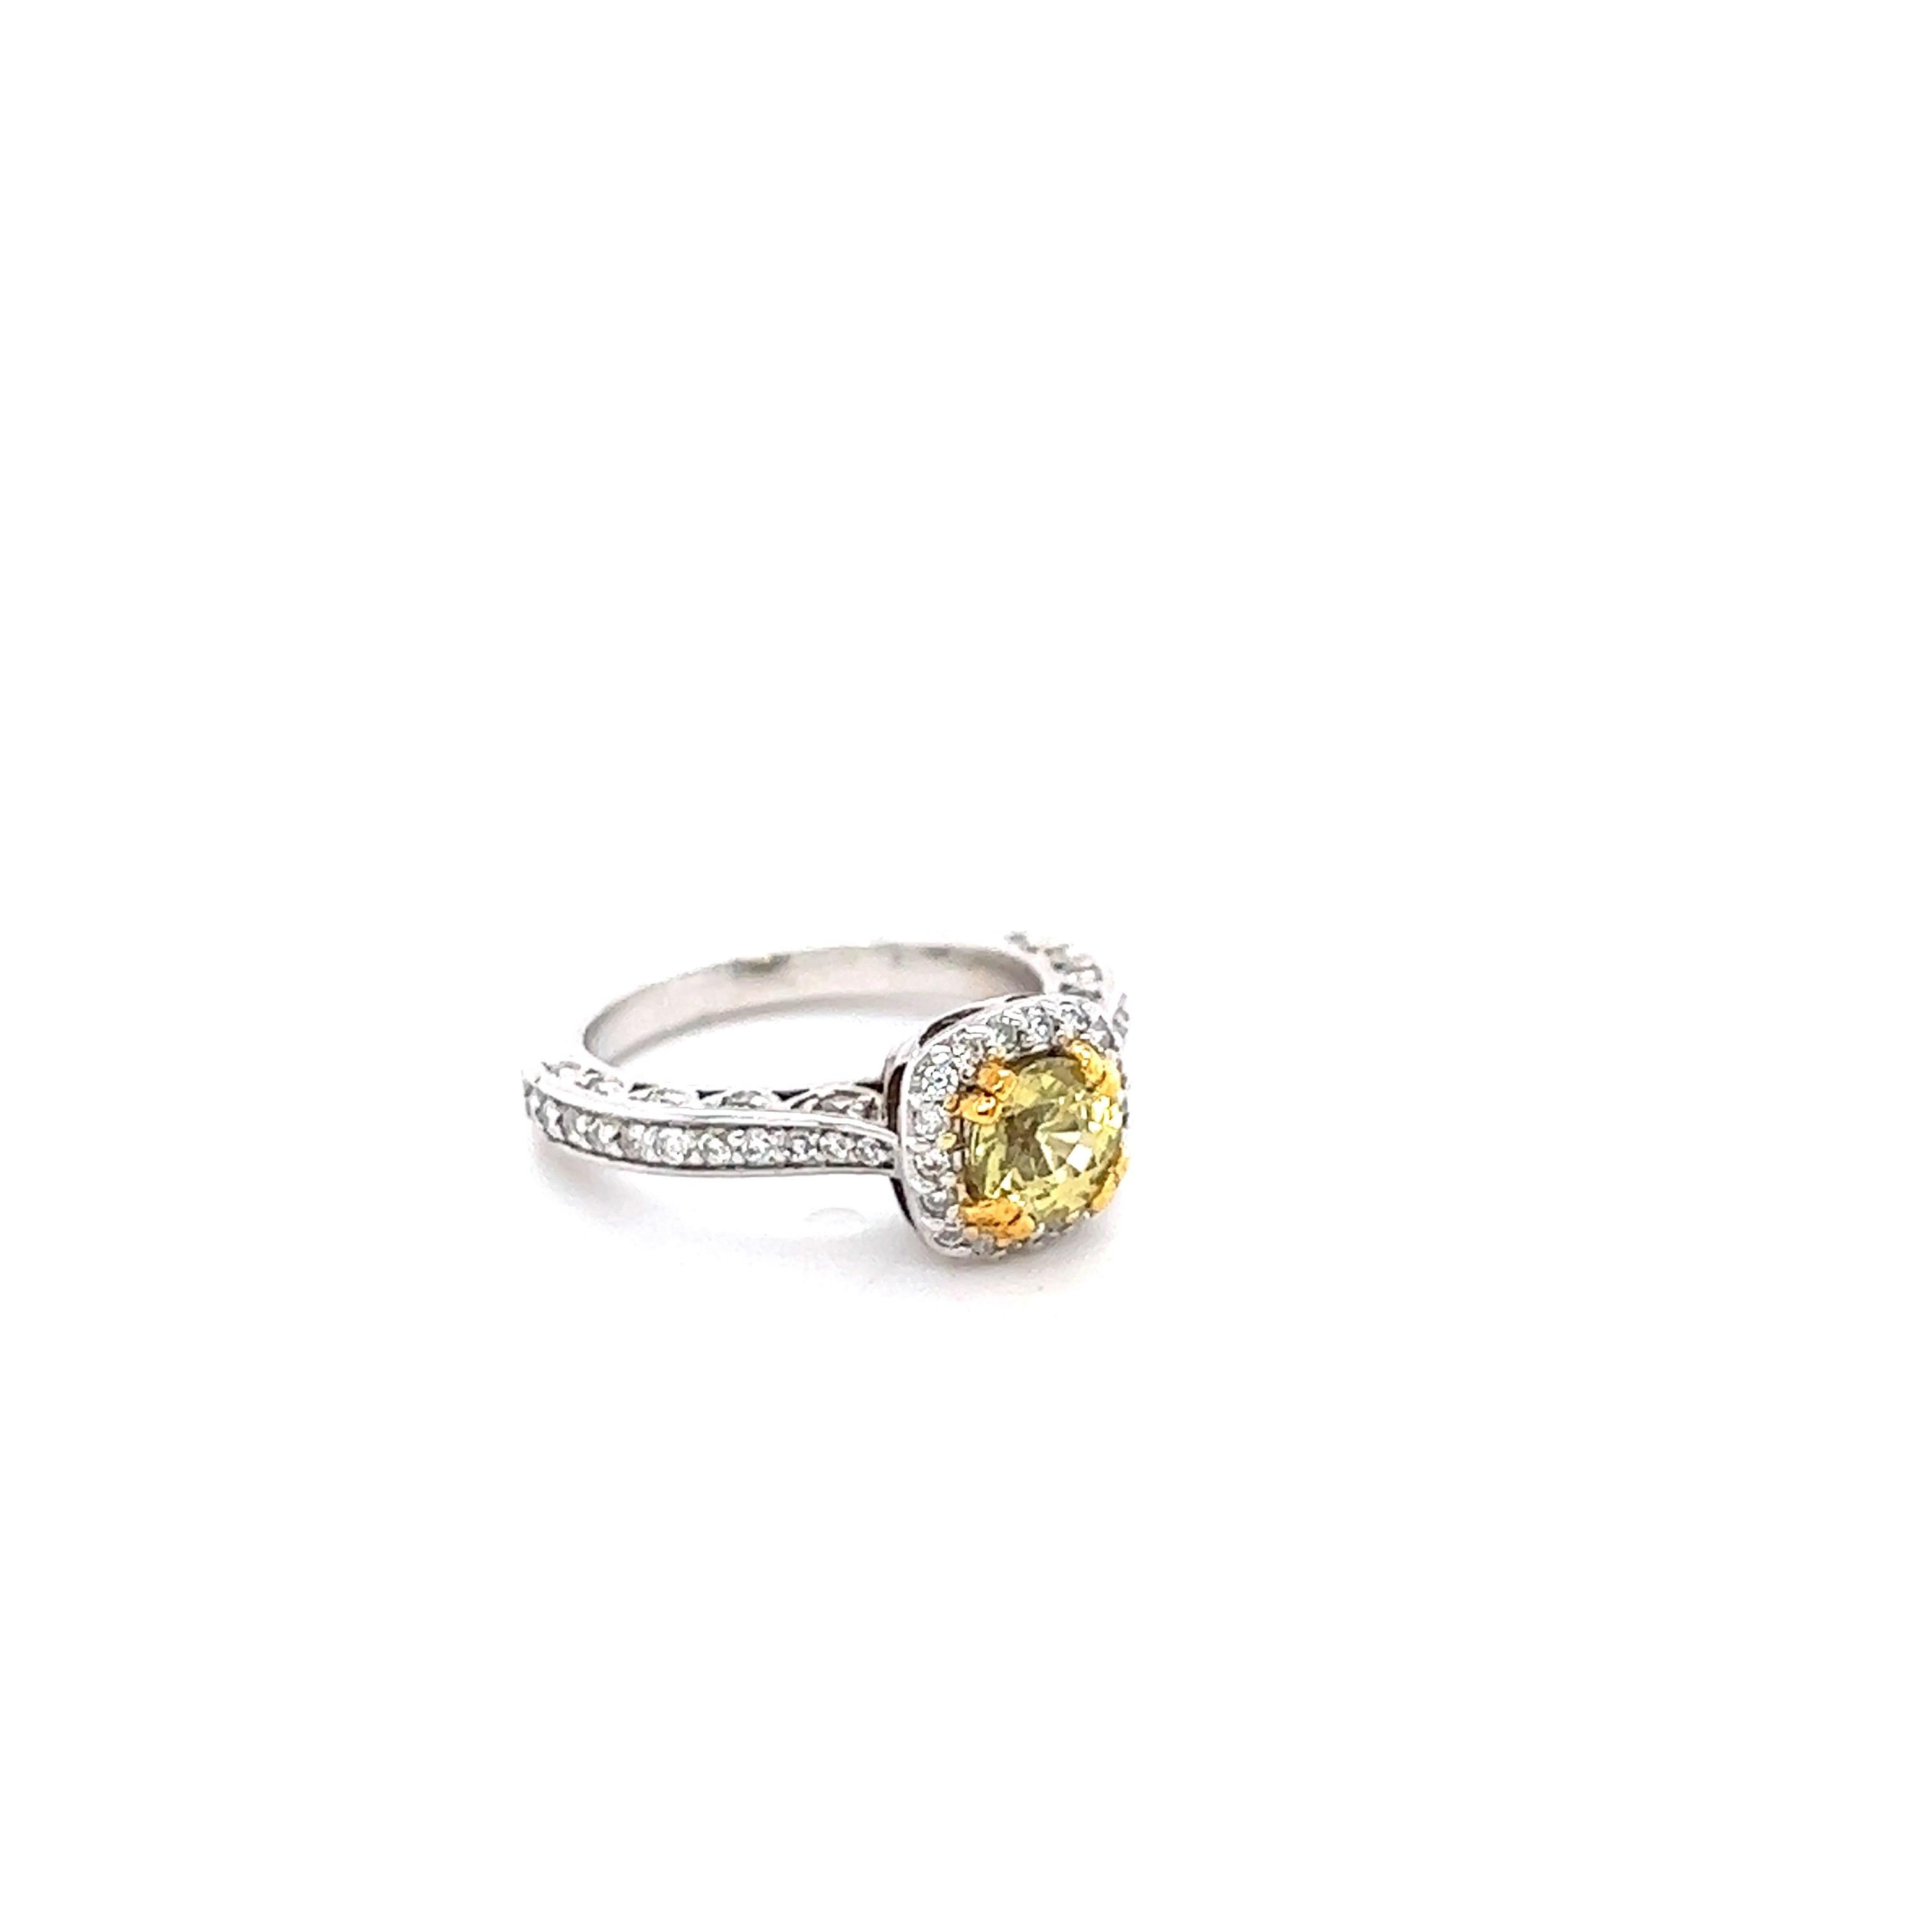 Dieser schöne Ring hat einen gelben Saphir im Rundschliff, der 1,07 Karat wiegt. Er ist umgeben von 60 Diamanten im Rundschliff mit einem Gewicht von 0,55 Karat. (Reinheit: VS, Farbe: H) 
Der gelbe Saphir misst 5 mm.  
Das Gesamtkaratgewicht des